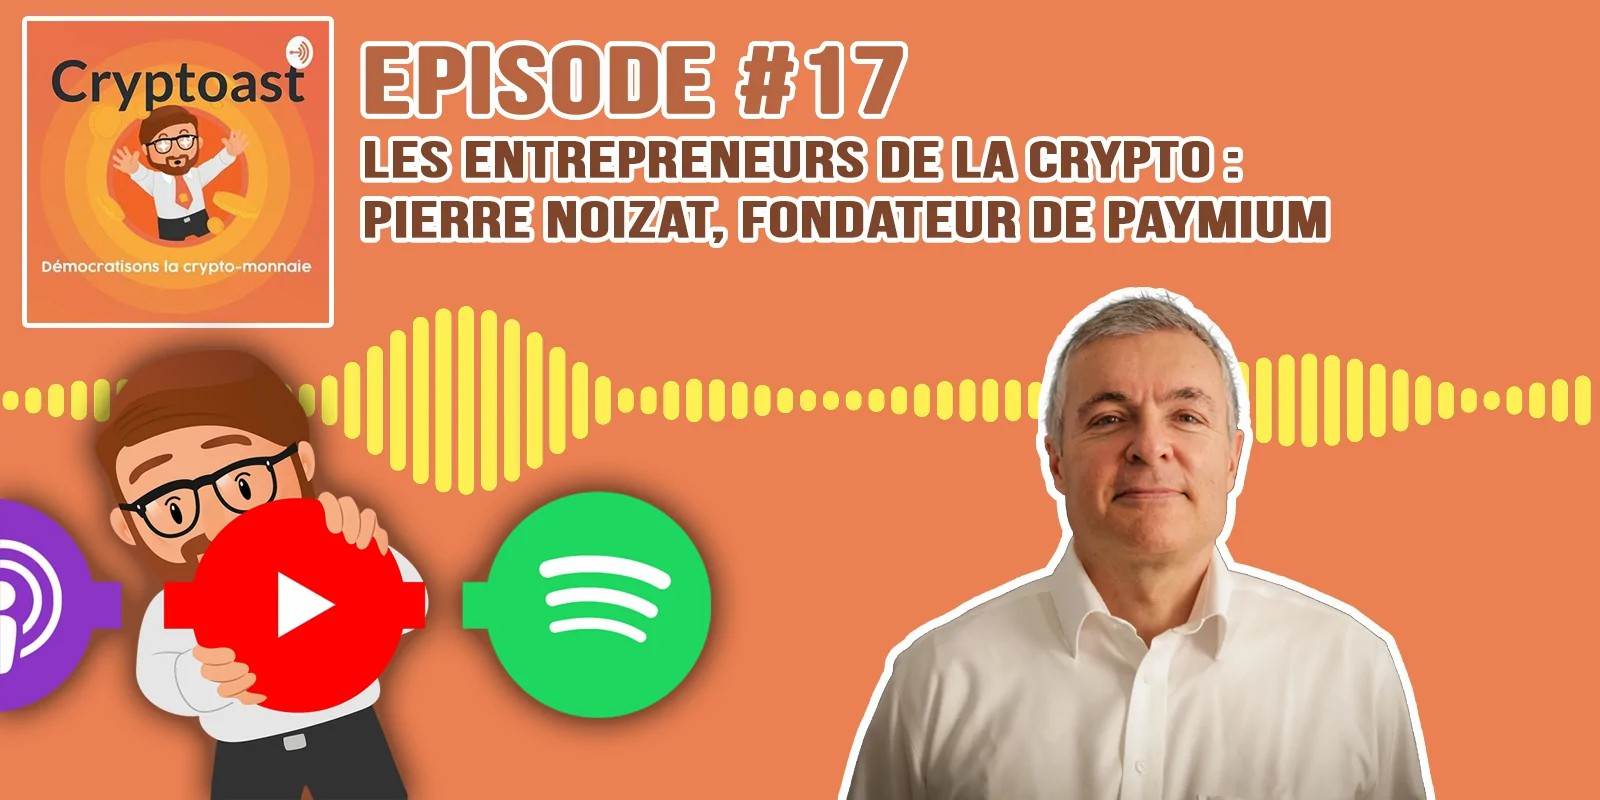 Podcast #17 - Crypto-entrepreneurs : Pierre Noizat, fondateur de Paymium